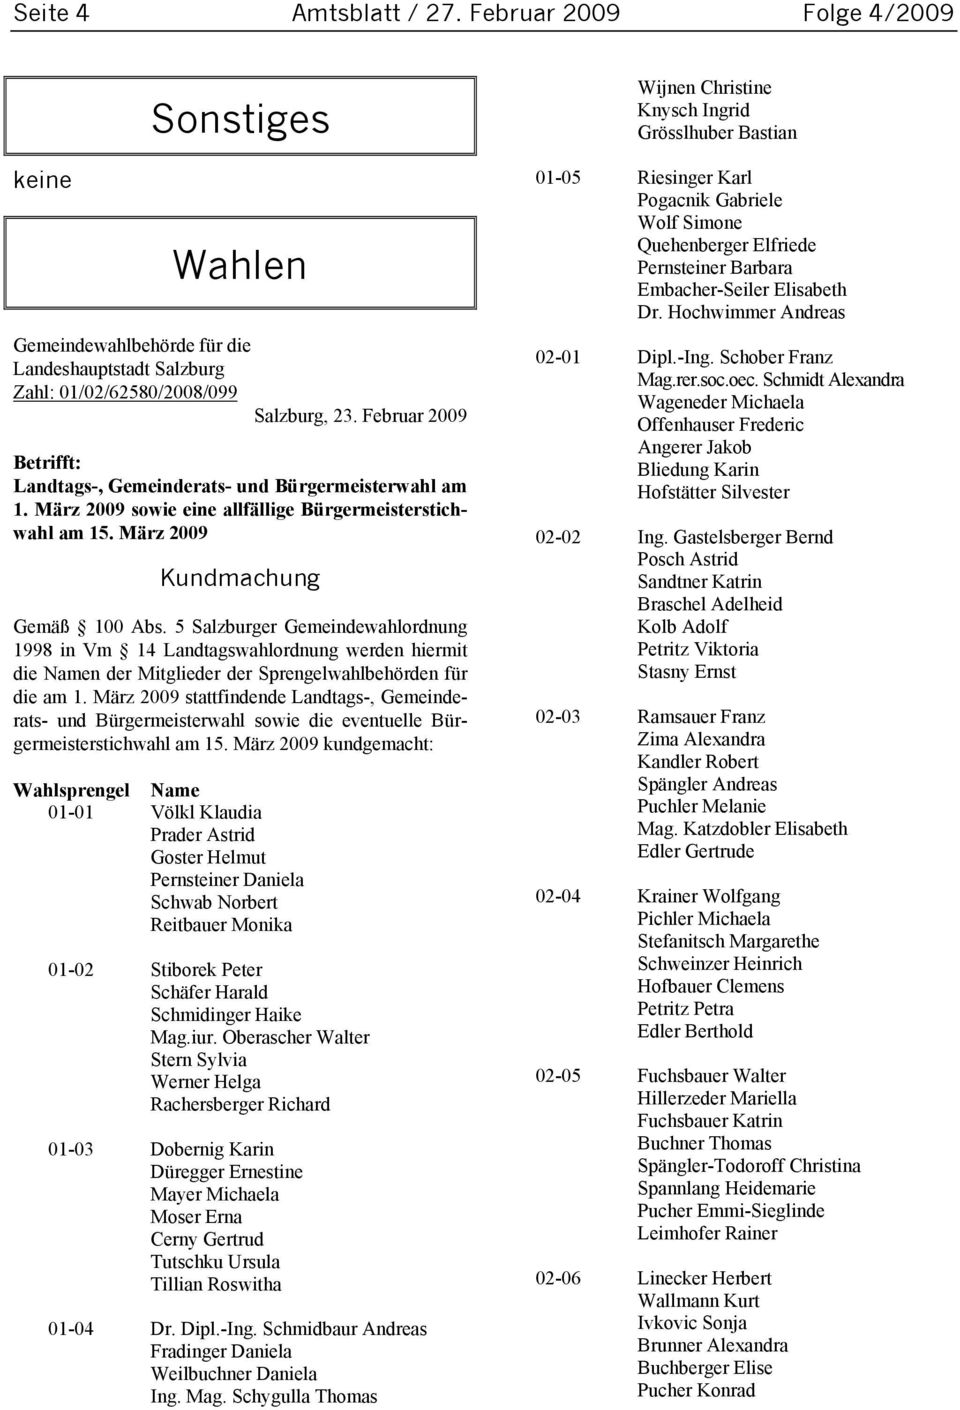 5 Salzburger Gemeindewahlordnung 1998 in Vm 14 Landtagswahlordnung werden hiermit die Namen der Mitglieder der Sprengelwahlbehörden für die am 1.